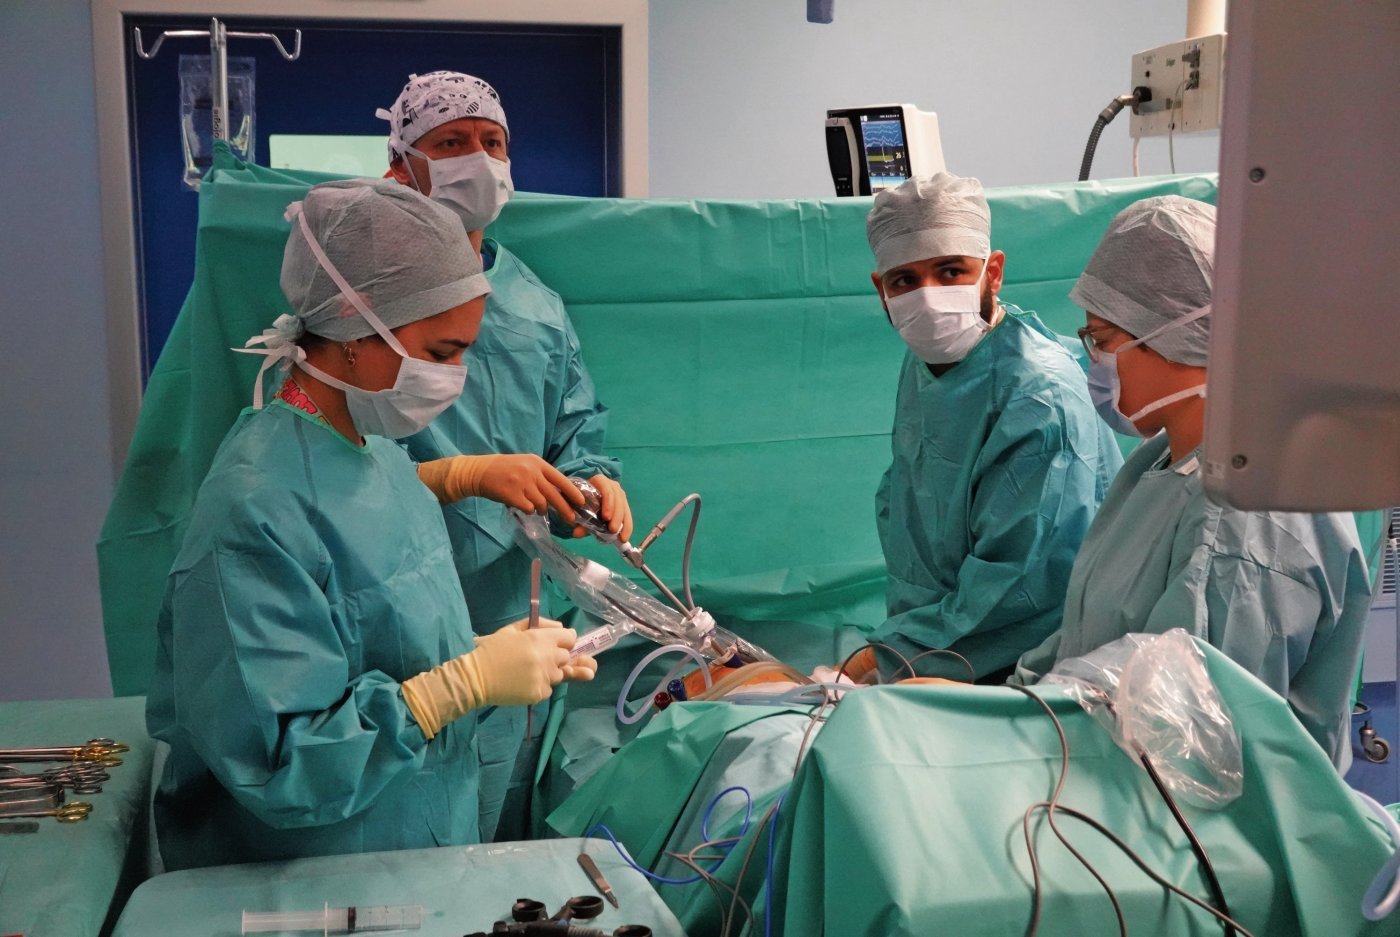 Une opération mini-invasive effectuée par laparoscopie par les Docteurs Roberto Rosini (à gauche) et Ahmed Adile au bloc opératoire de Delémont.